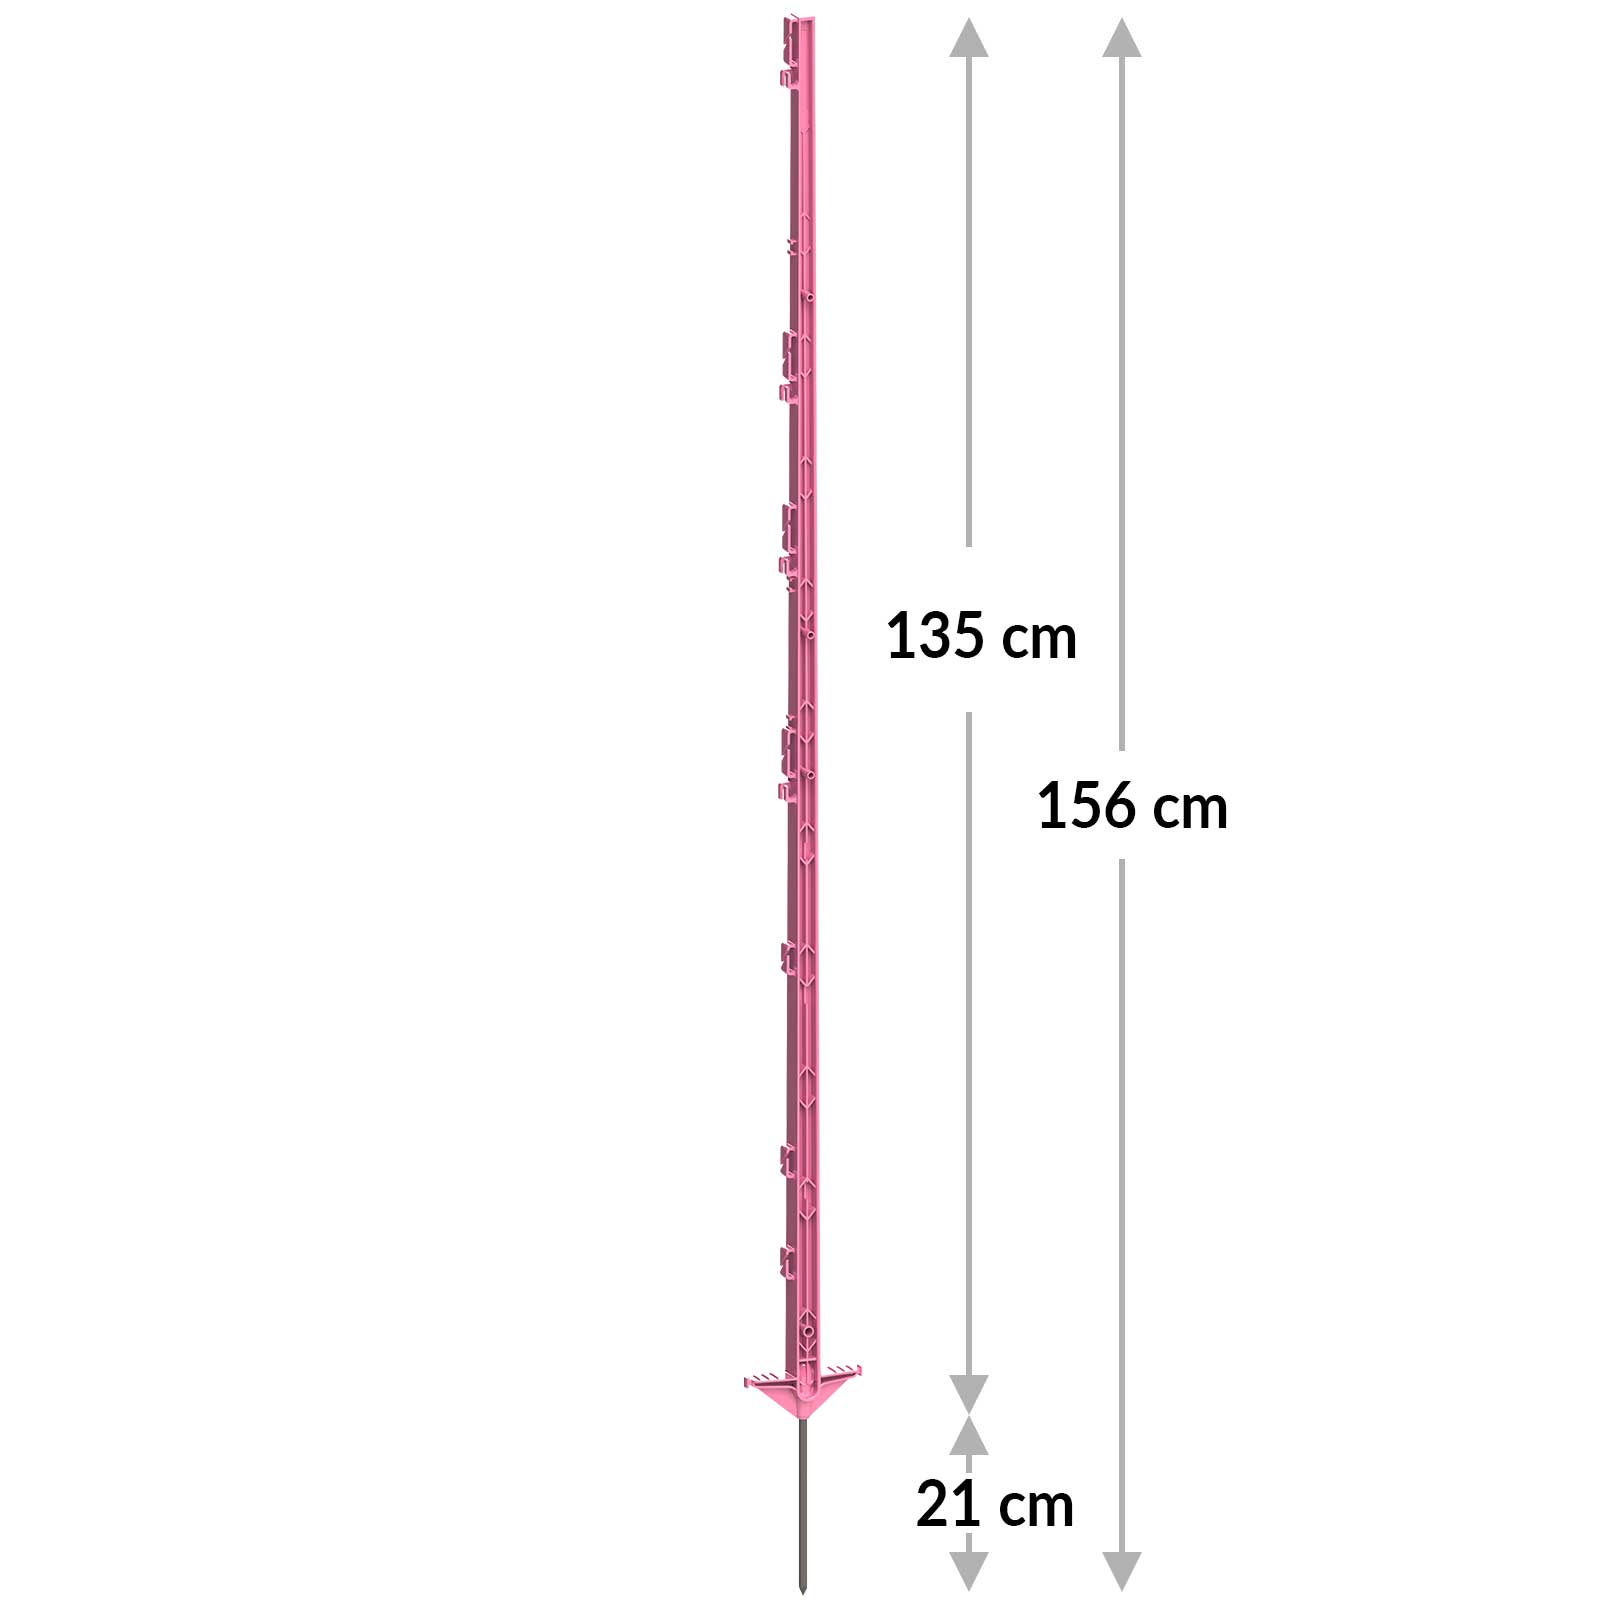 5x AKO Paletto in plastica Expert, 156 cm, doppio battistrada, rosa